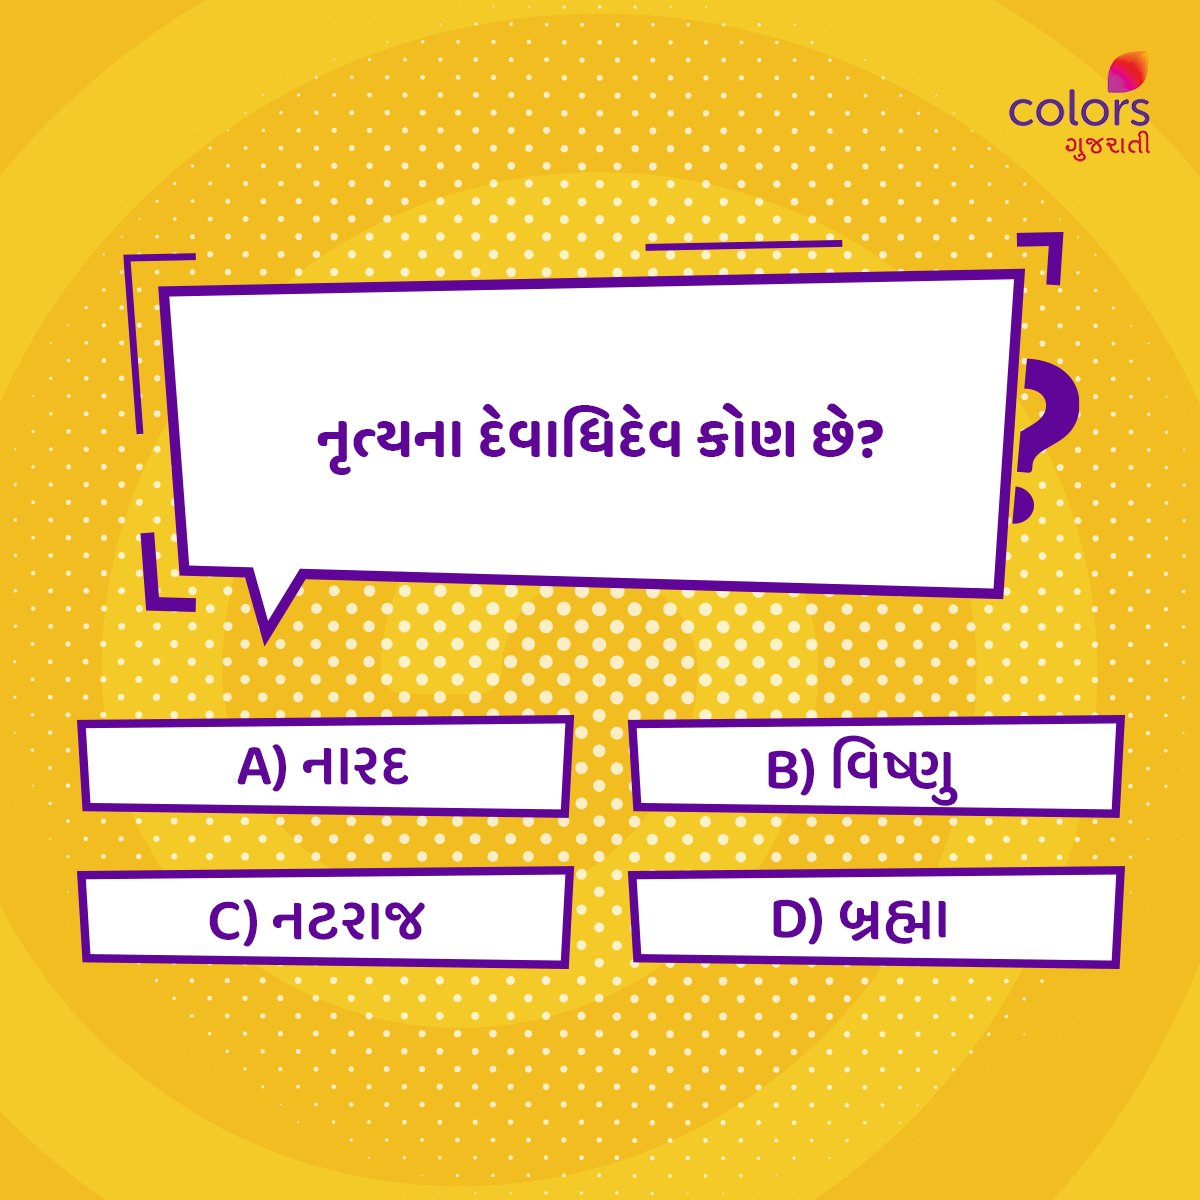 જો તમને આ પ્રશ્નનો જવાબ આવડતો હોય, તો Comment માં જણાવો.👇

#Colorsgujarati #Gujarat #Quiz #Facts #generalquiz